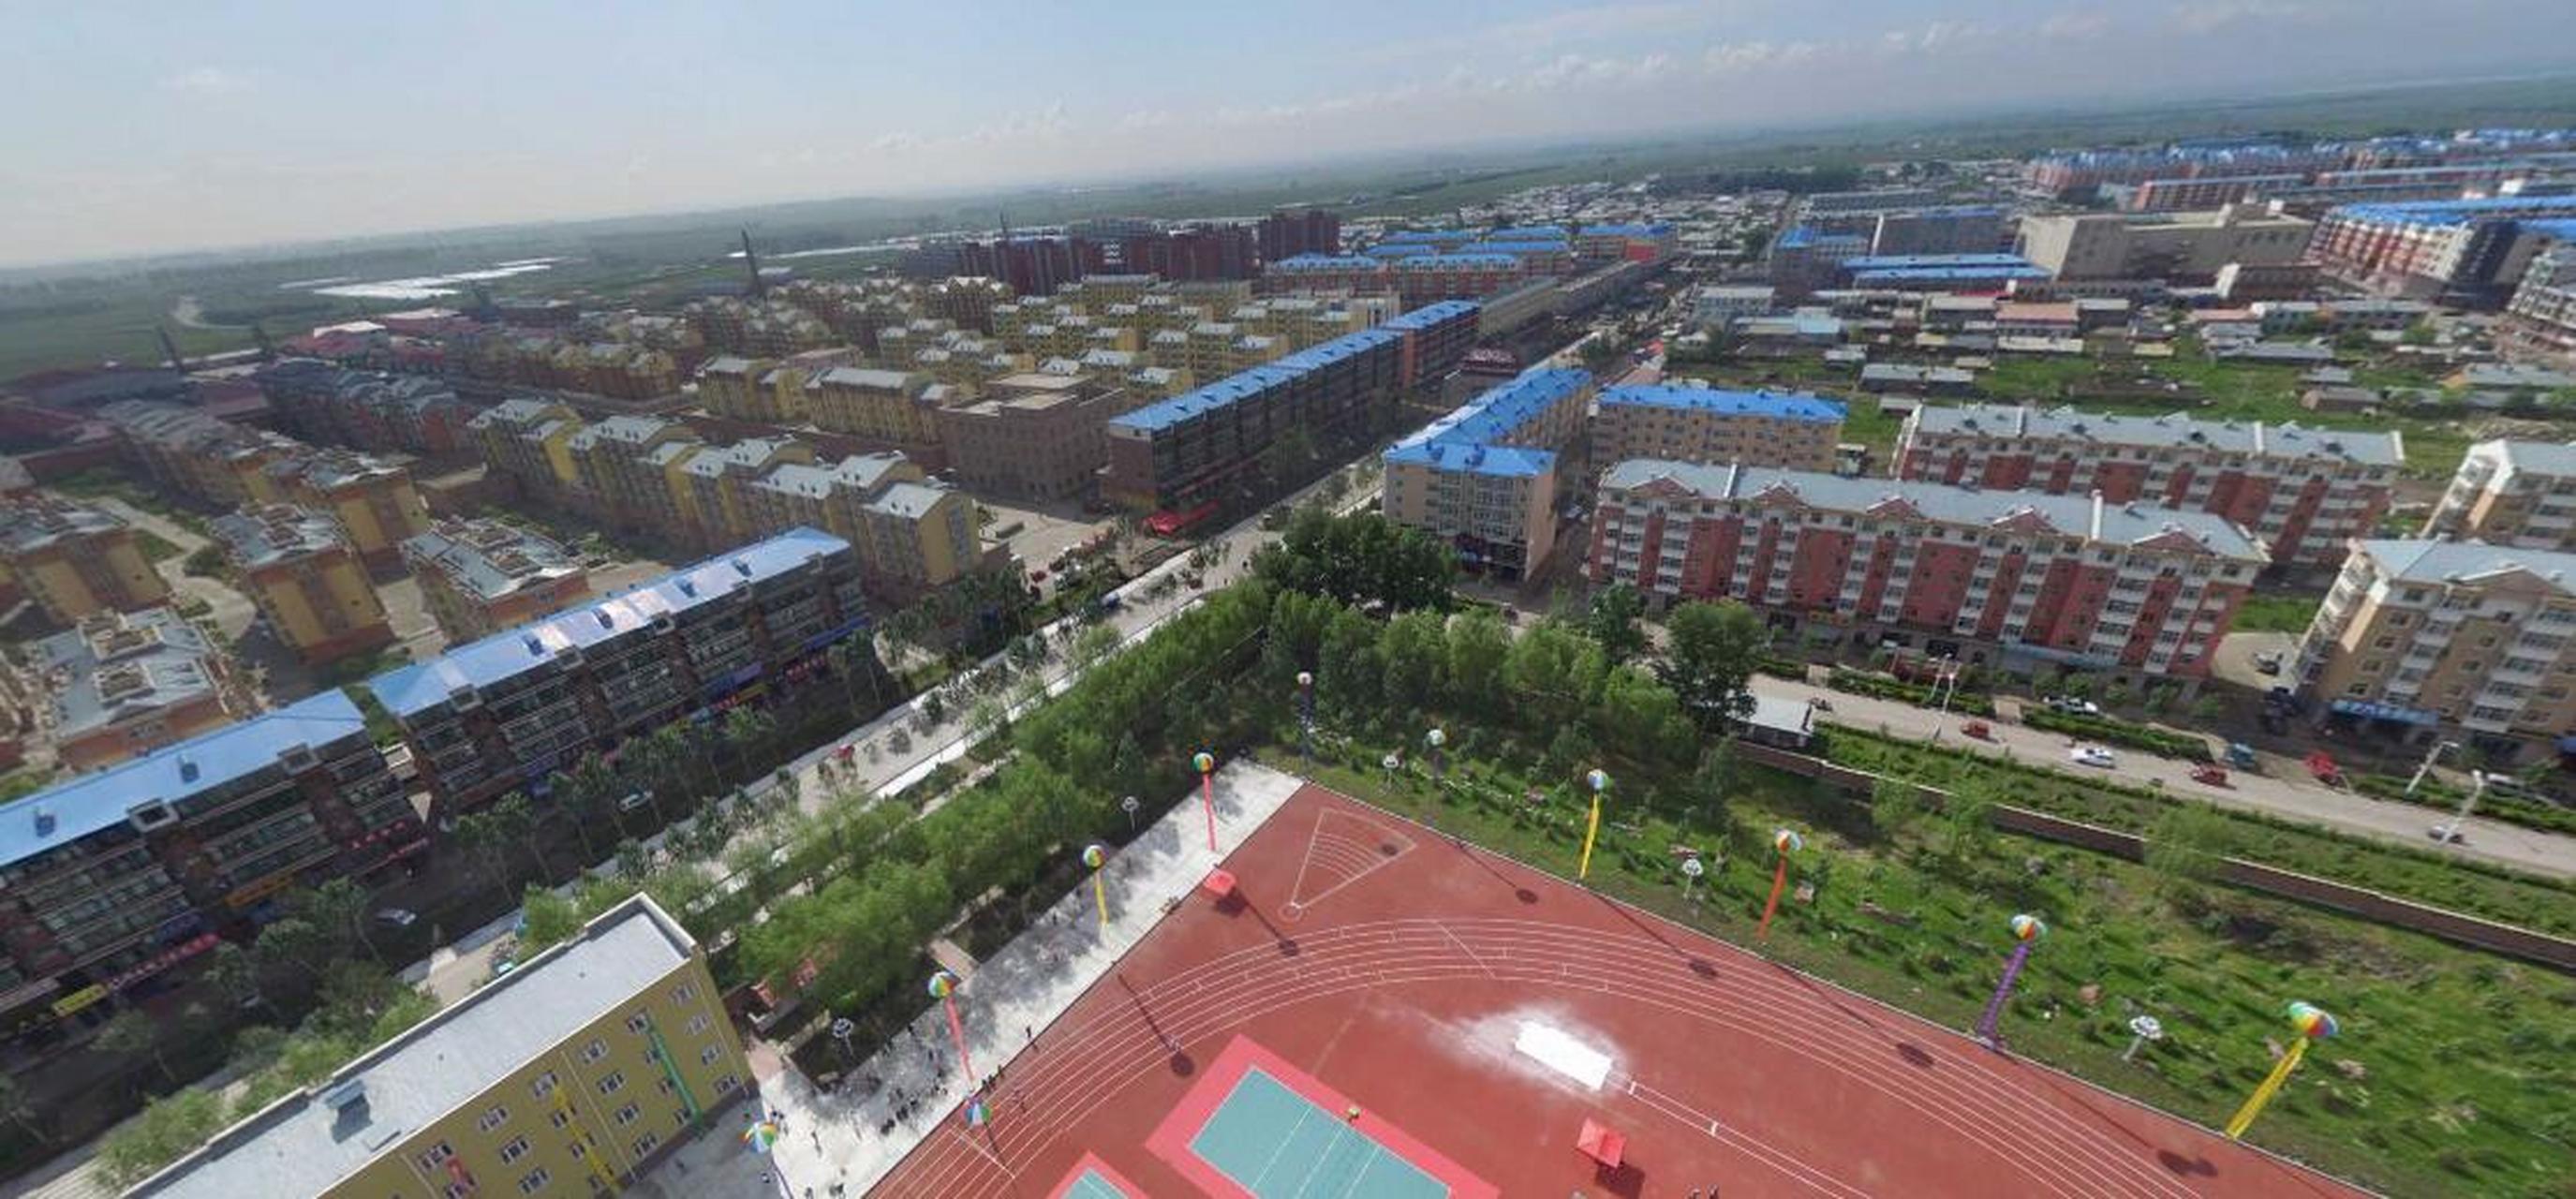 黑龙江省黑河北安市的通北镇,是一个比较大的城镇,建成区面积约7平方